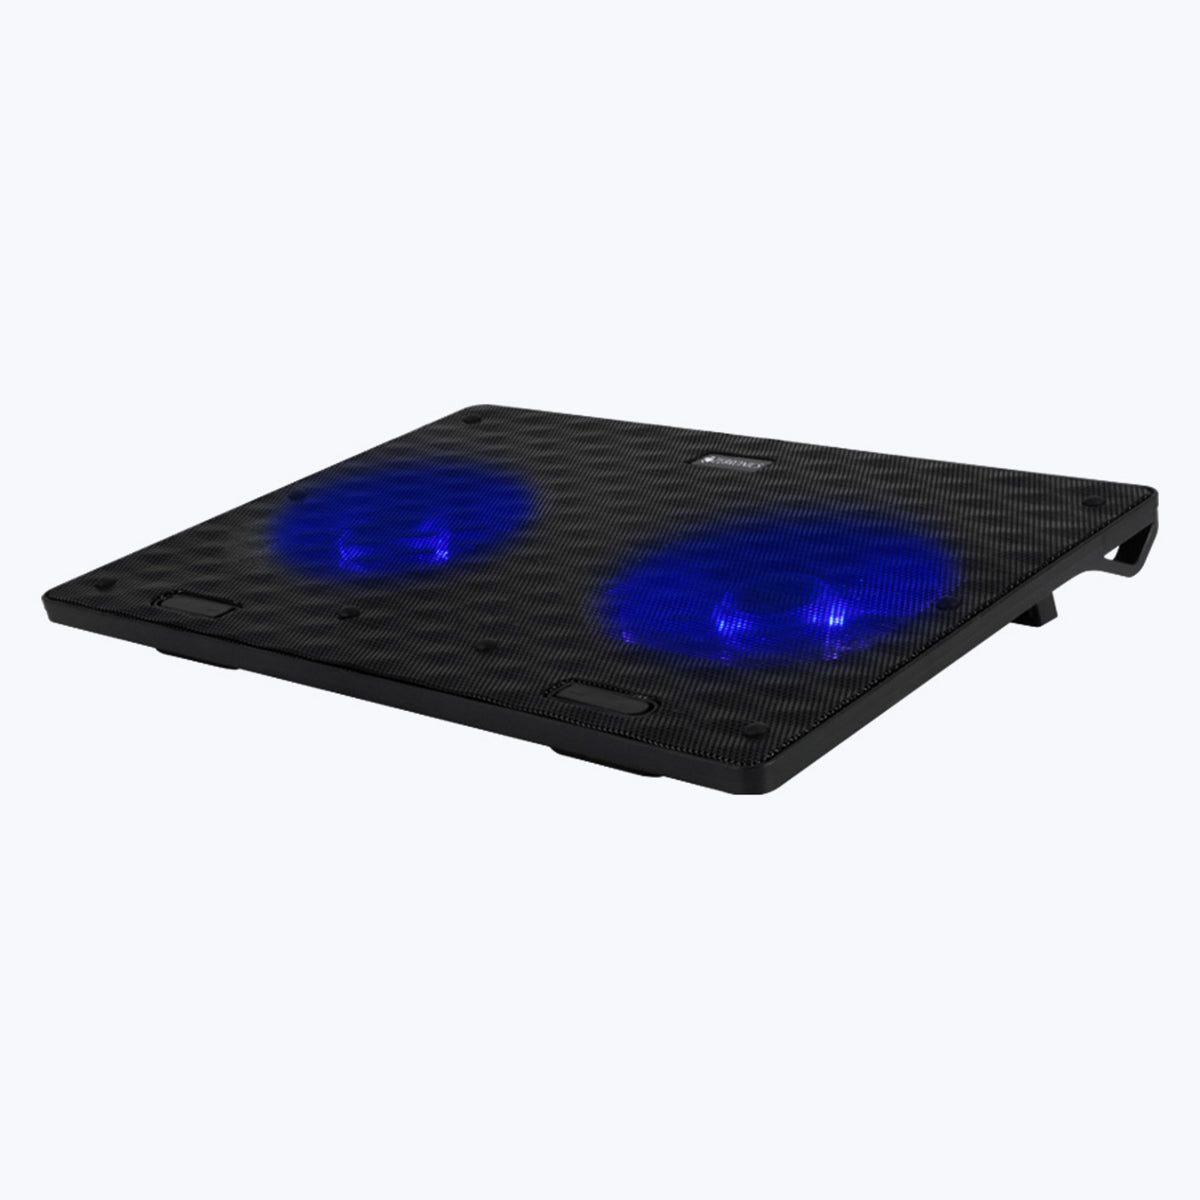 Zeb-NC3300 - Laptop cooling pad - Zebronics